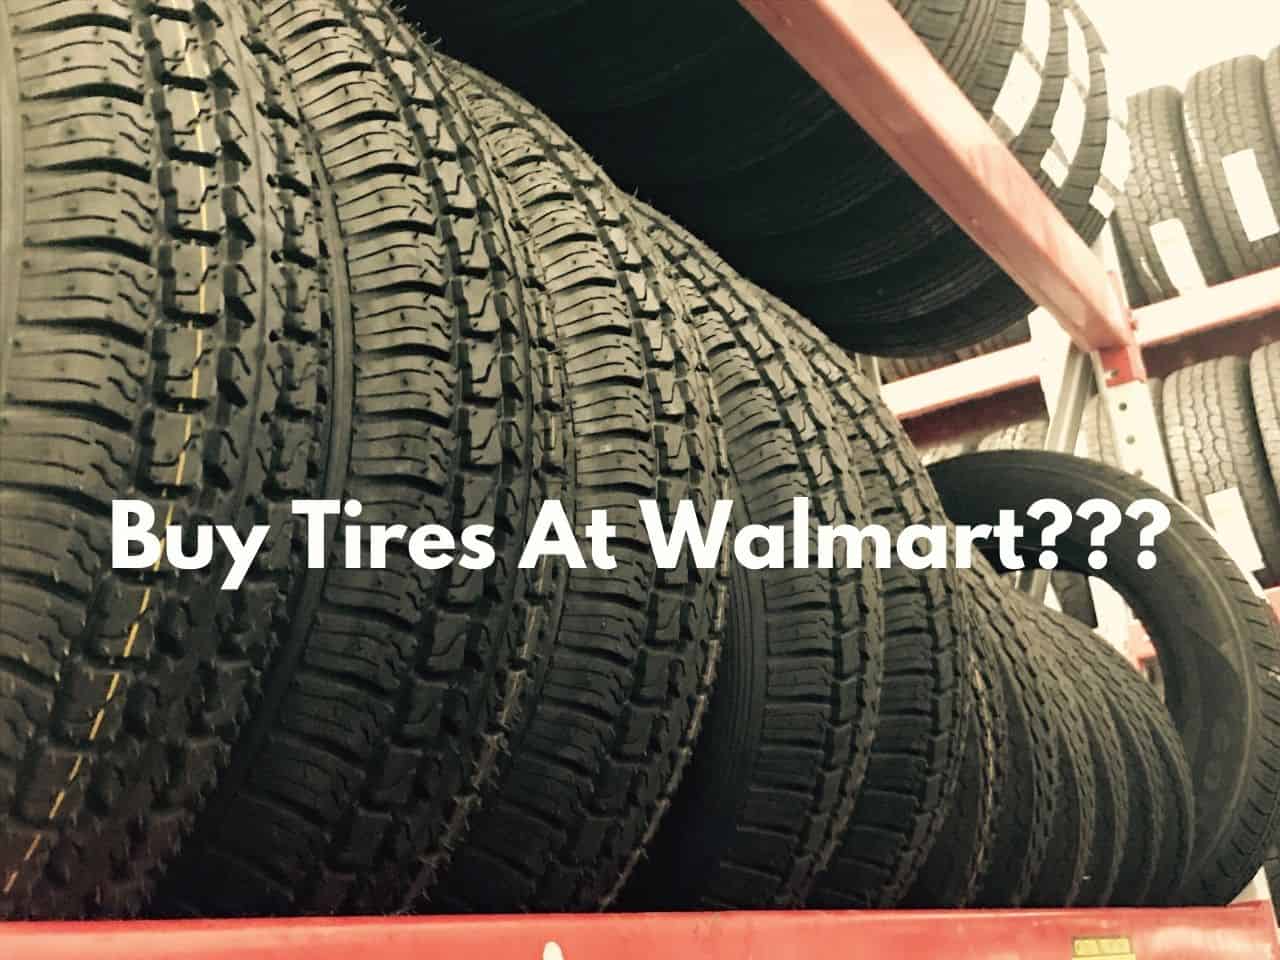 Is It Bad to Buy Walmart Tires? #tires #walmart